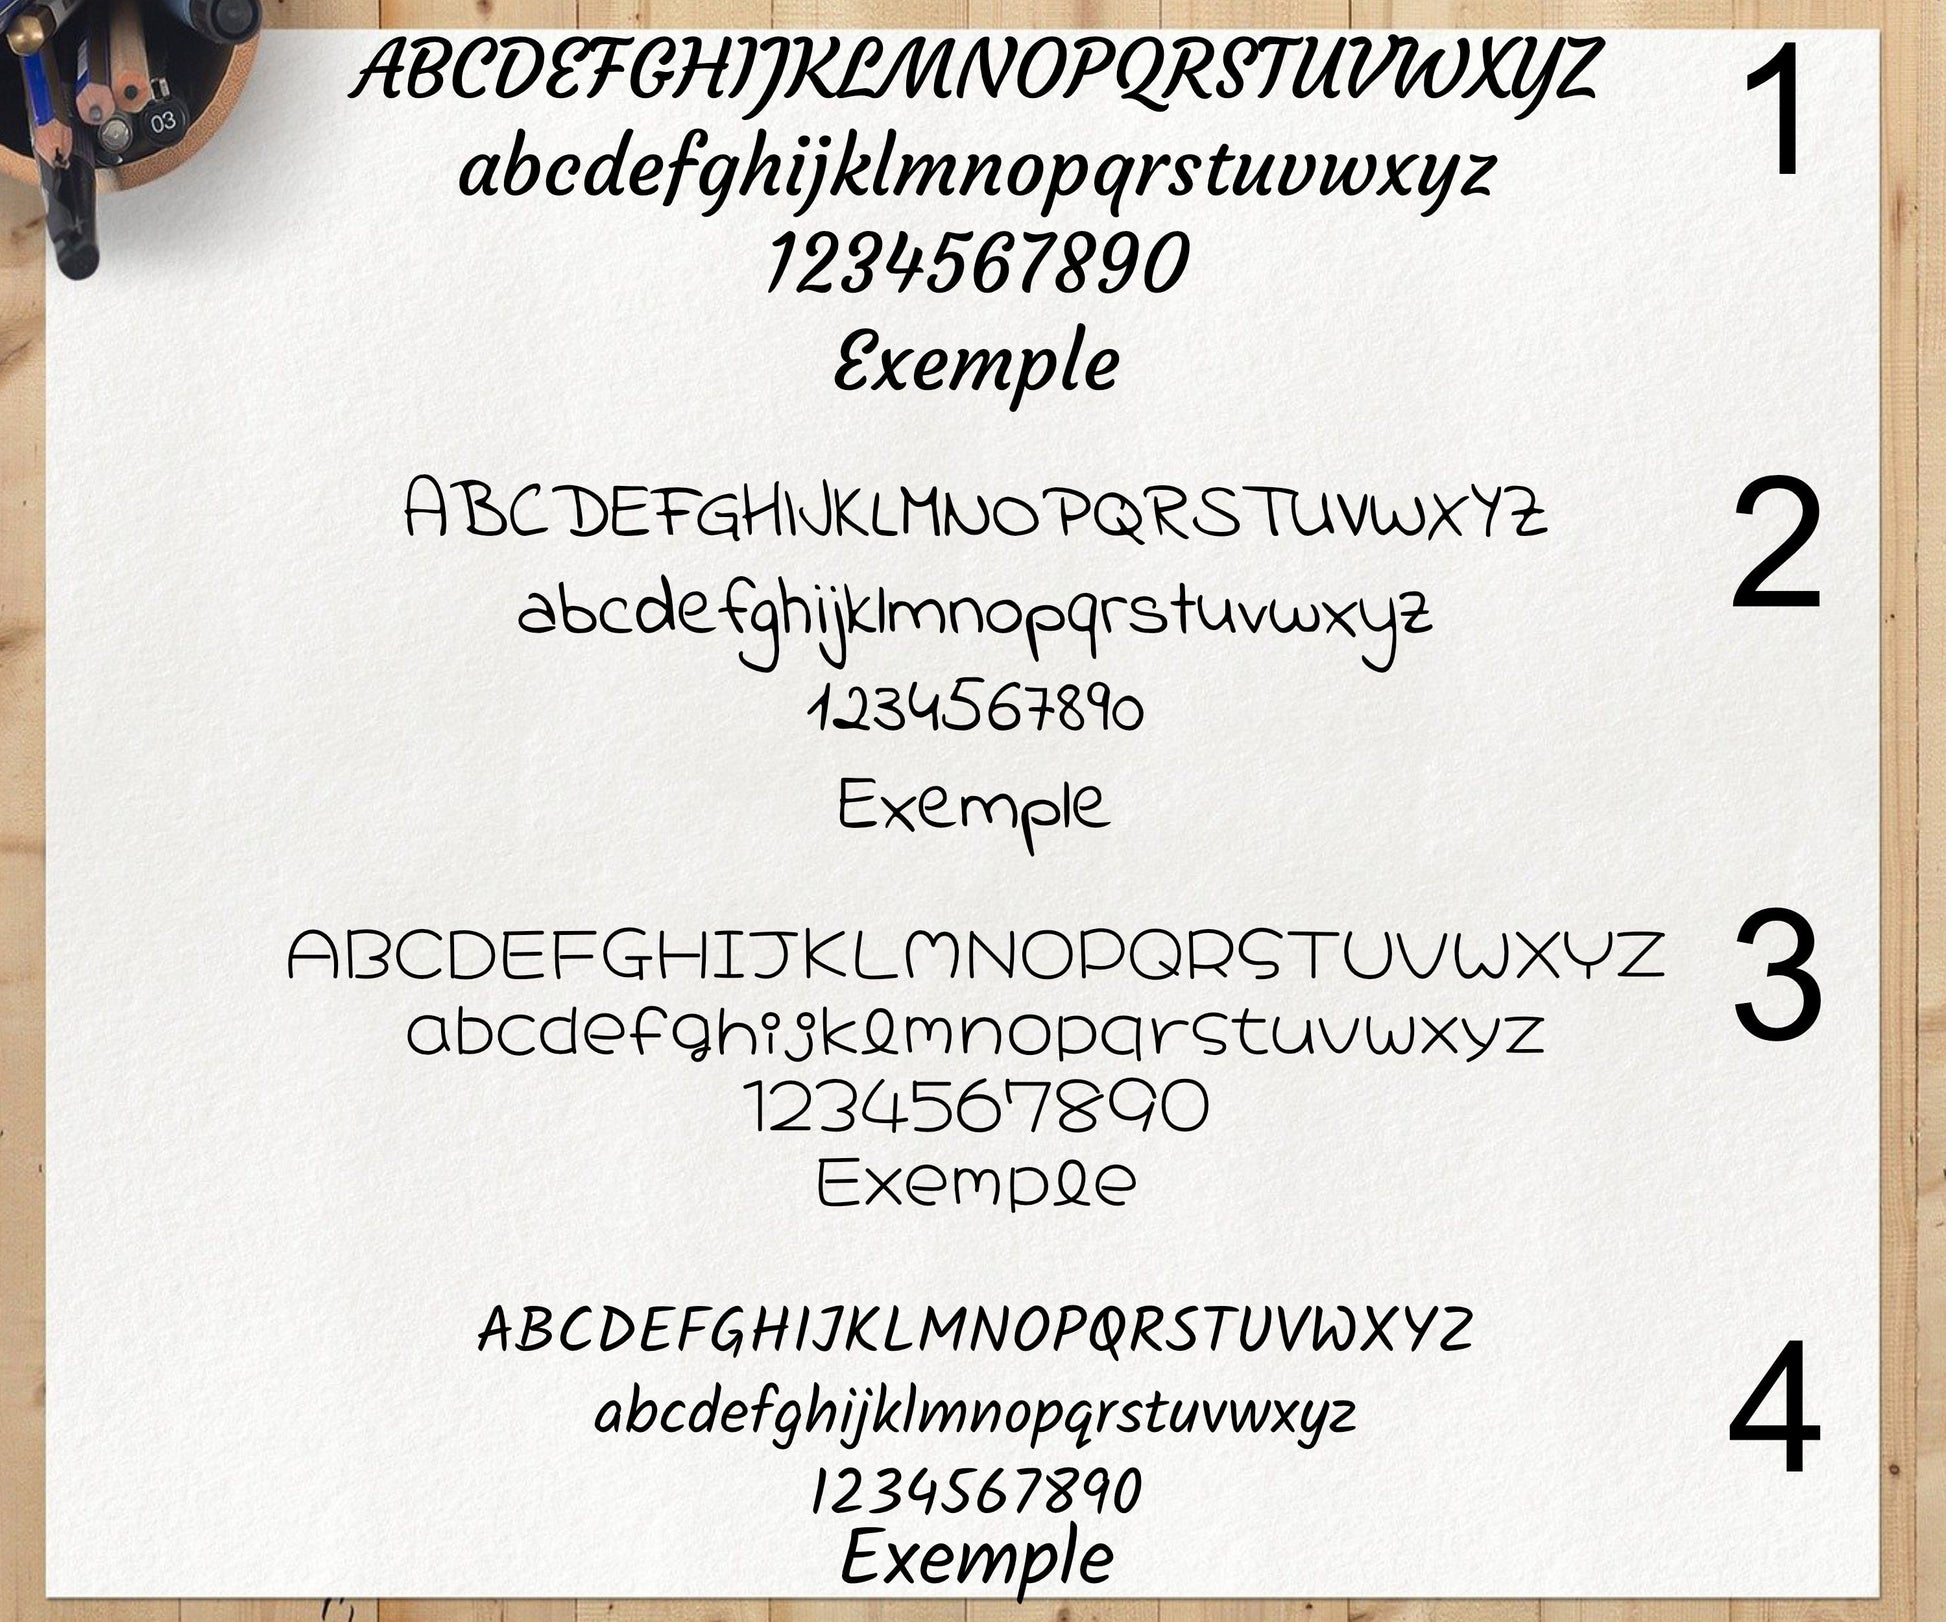 Porte-clé original avec texte personnalisé au recto et verso